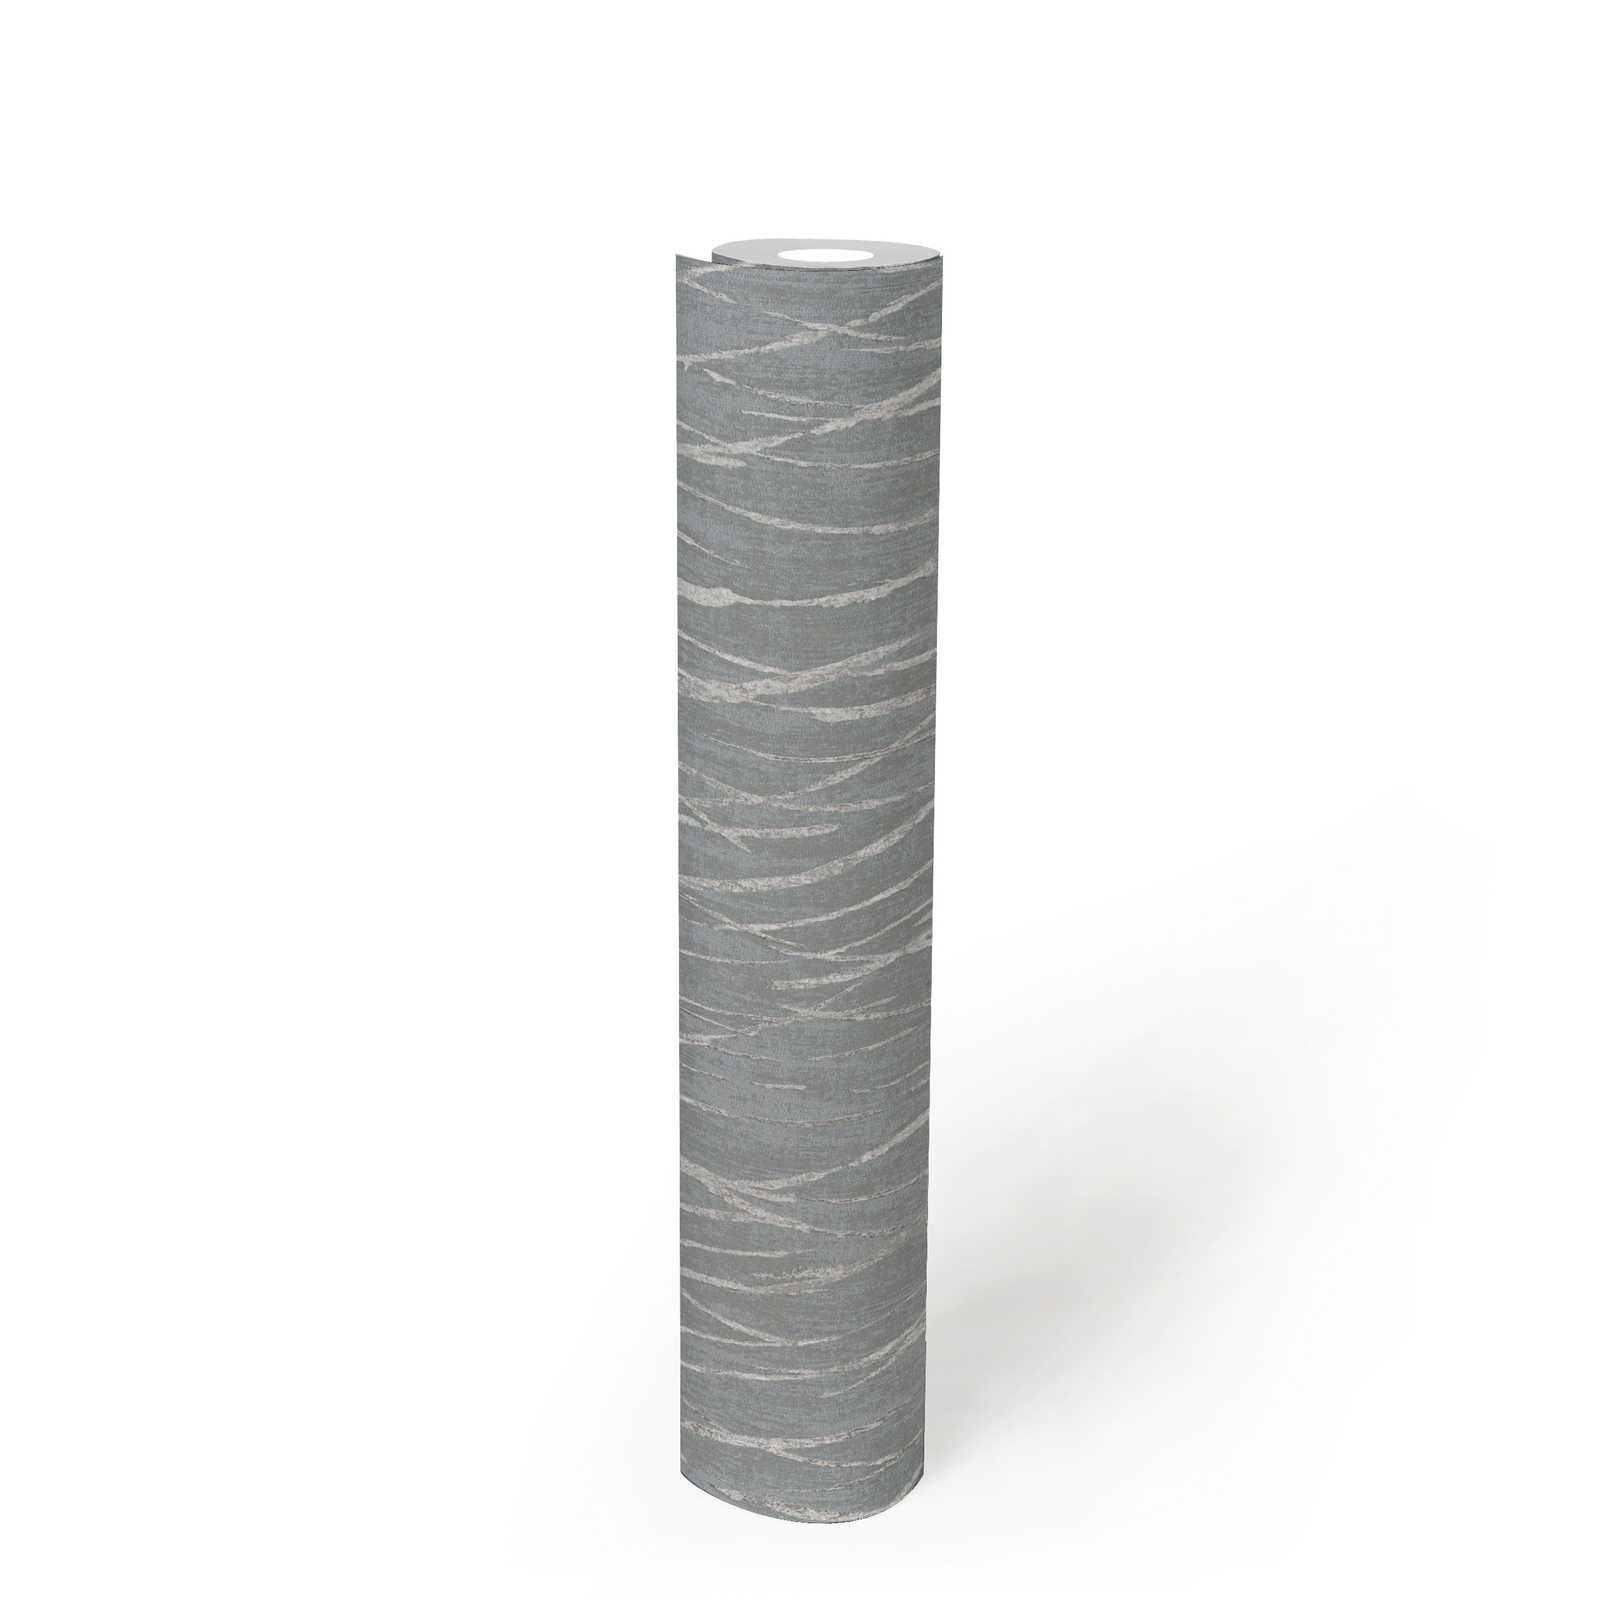             Carta da parati in tessuto non tessuto con disegno della natura ed effetto metallizzato - grigio, metallizzato
        